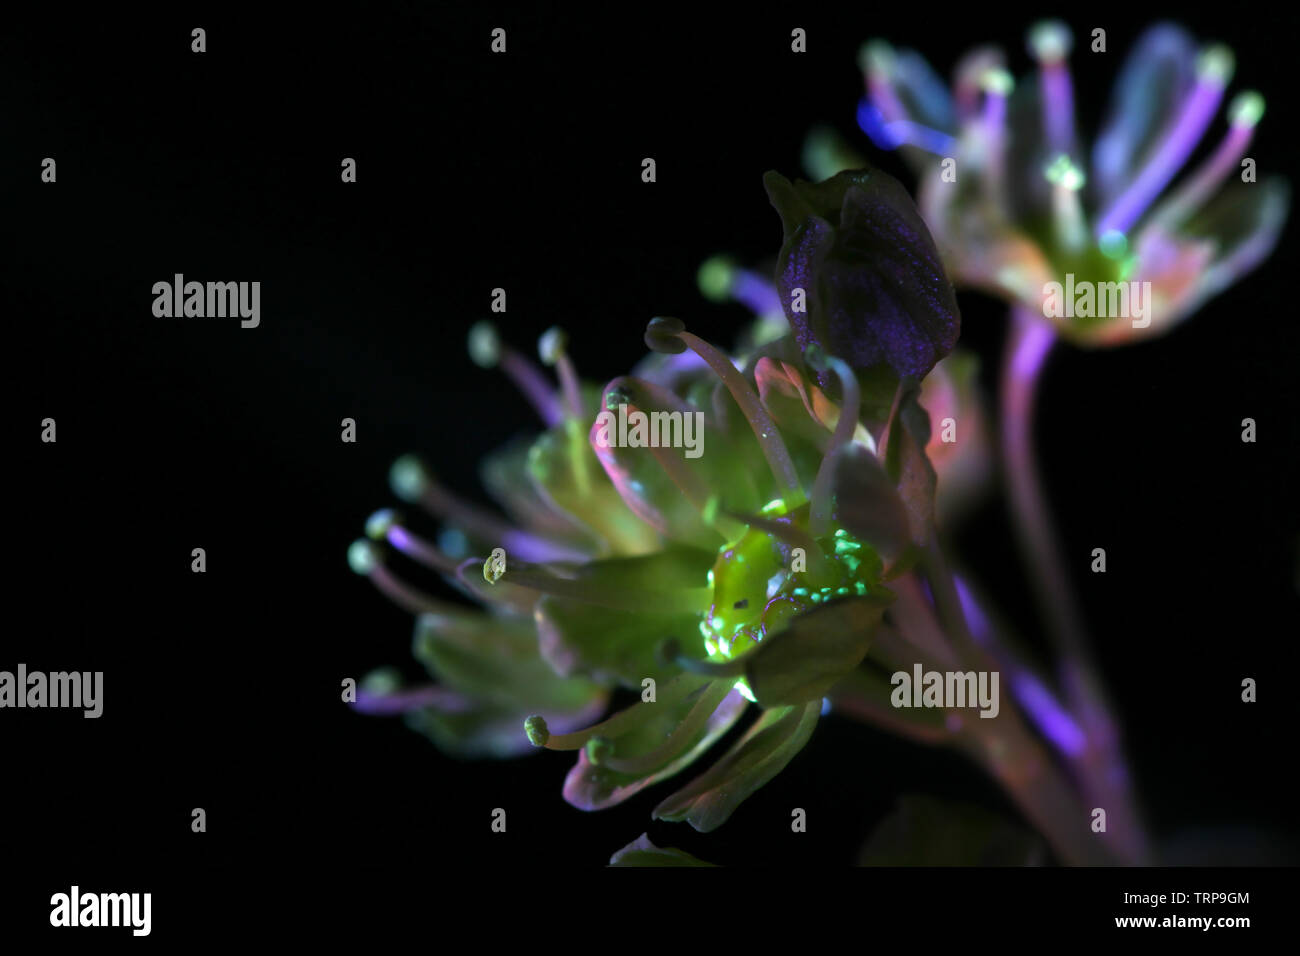 Fleurs de Norway maple, Acer platanoides, photographiée en lumière ultraviolette (365 nm) Banque D'Images